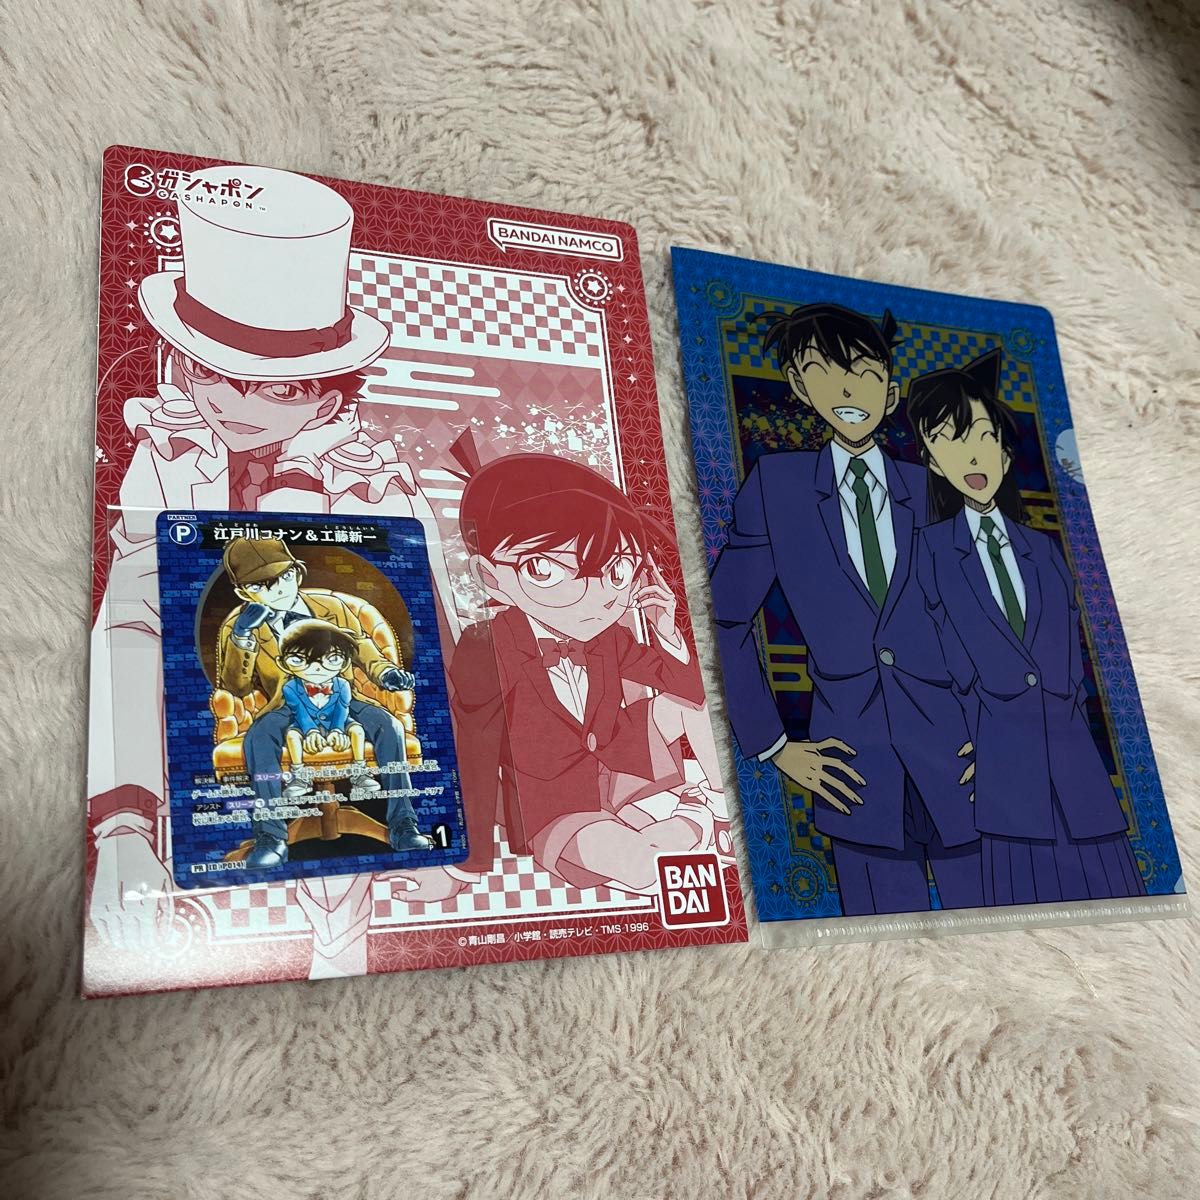 名探偵コナン カードゲーム 江戸川コナン購入特典 プロモカード 1枚とガチャガチャ(ガチャポン)ファイル 1枚セット